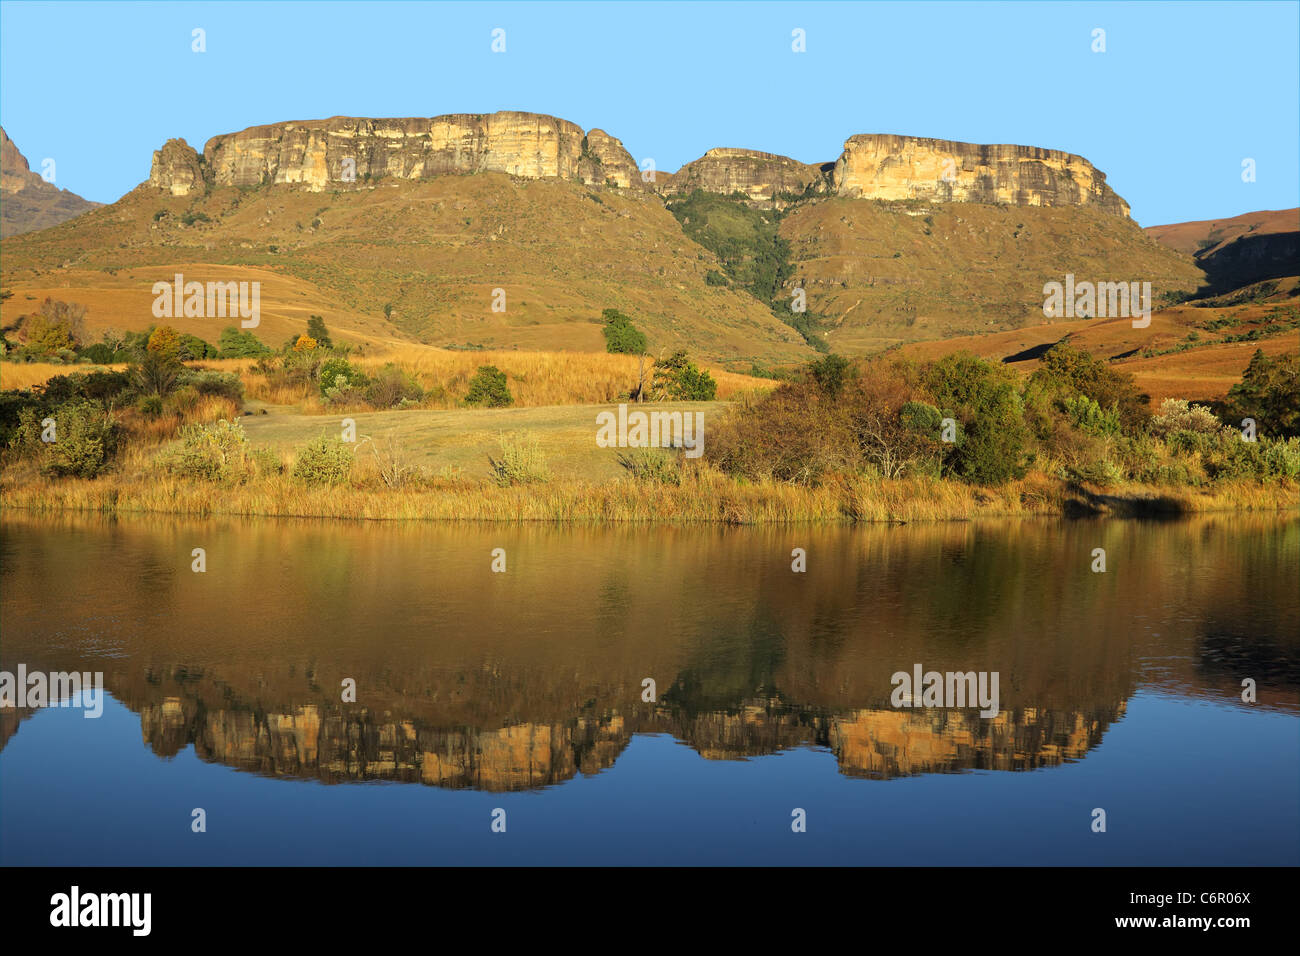 Des montagnes de grès avec réflexion symétrique dans l'eau, Parc national royal Natal, Afrique du Sud Banque D'Images